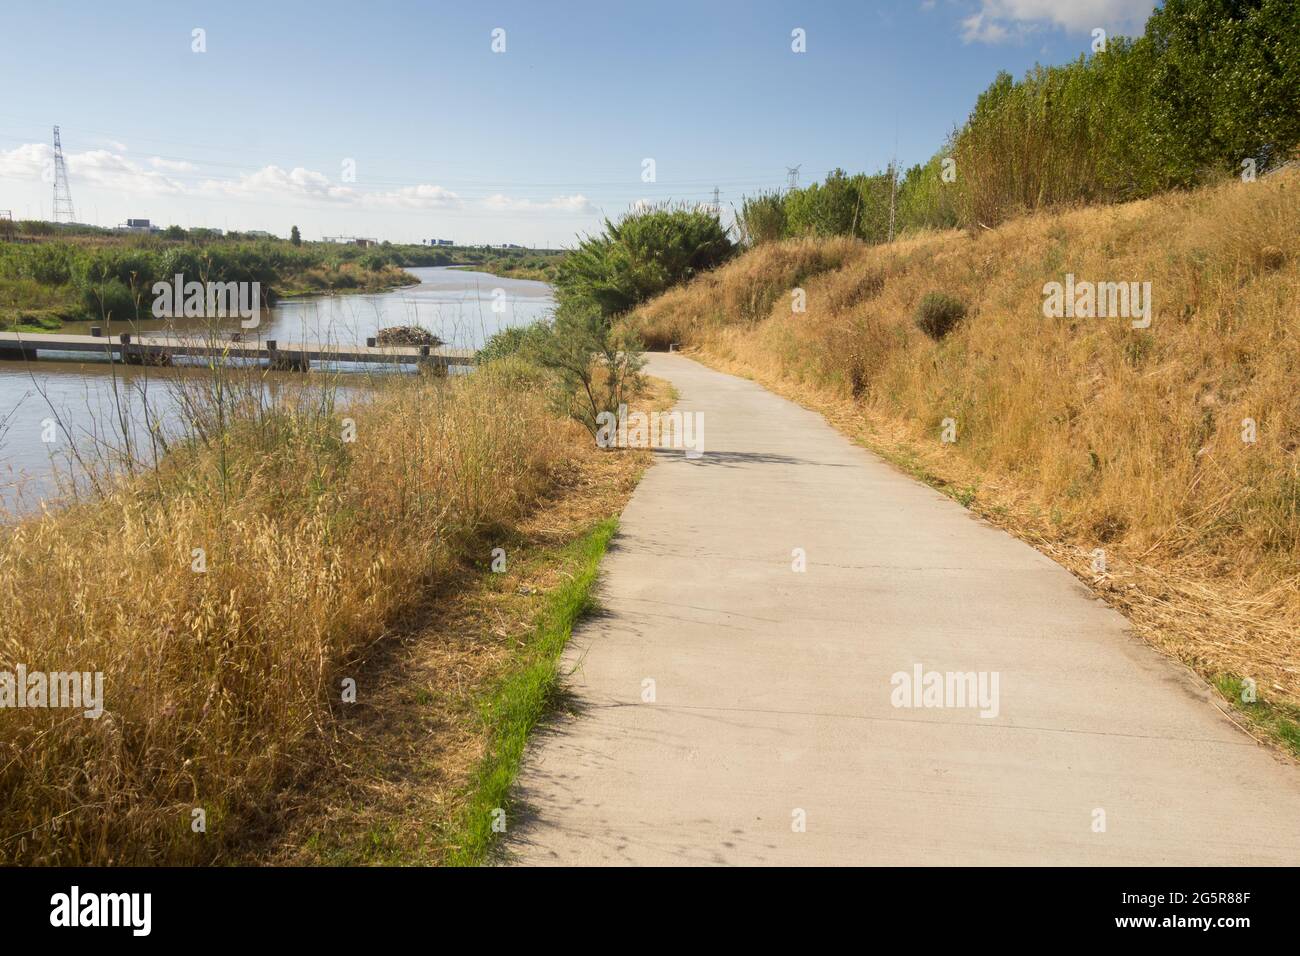 Sentieri e sentieri in montagna e vicino al fiume; sentieri per escursioni in bicicletta, a piedi, in corsa o a piedi. Foto Stock